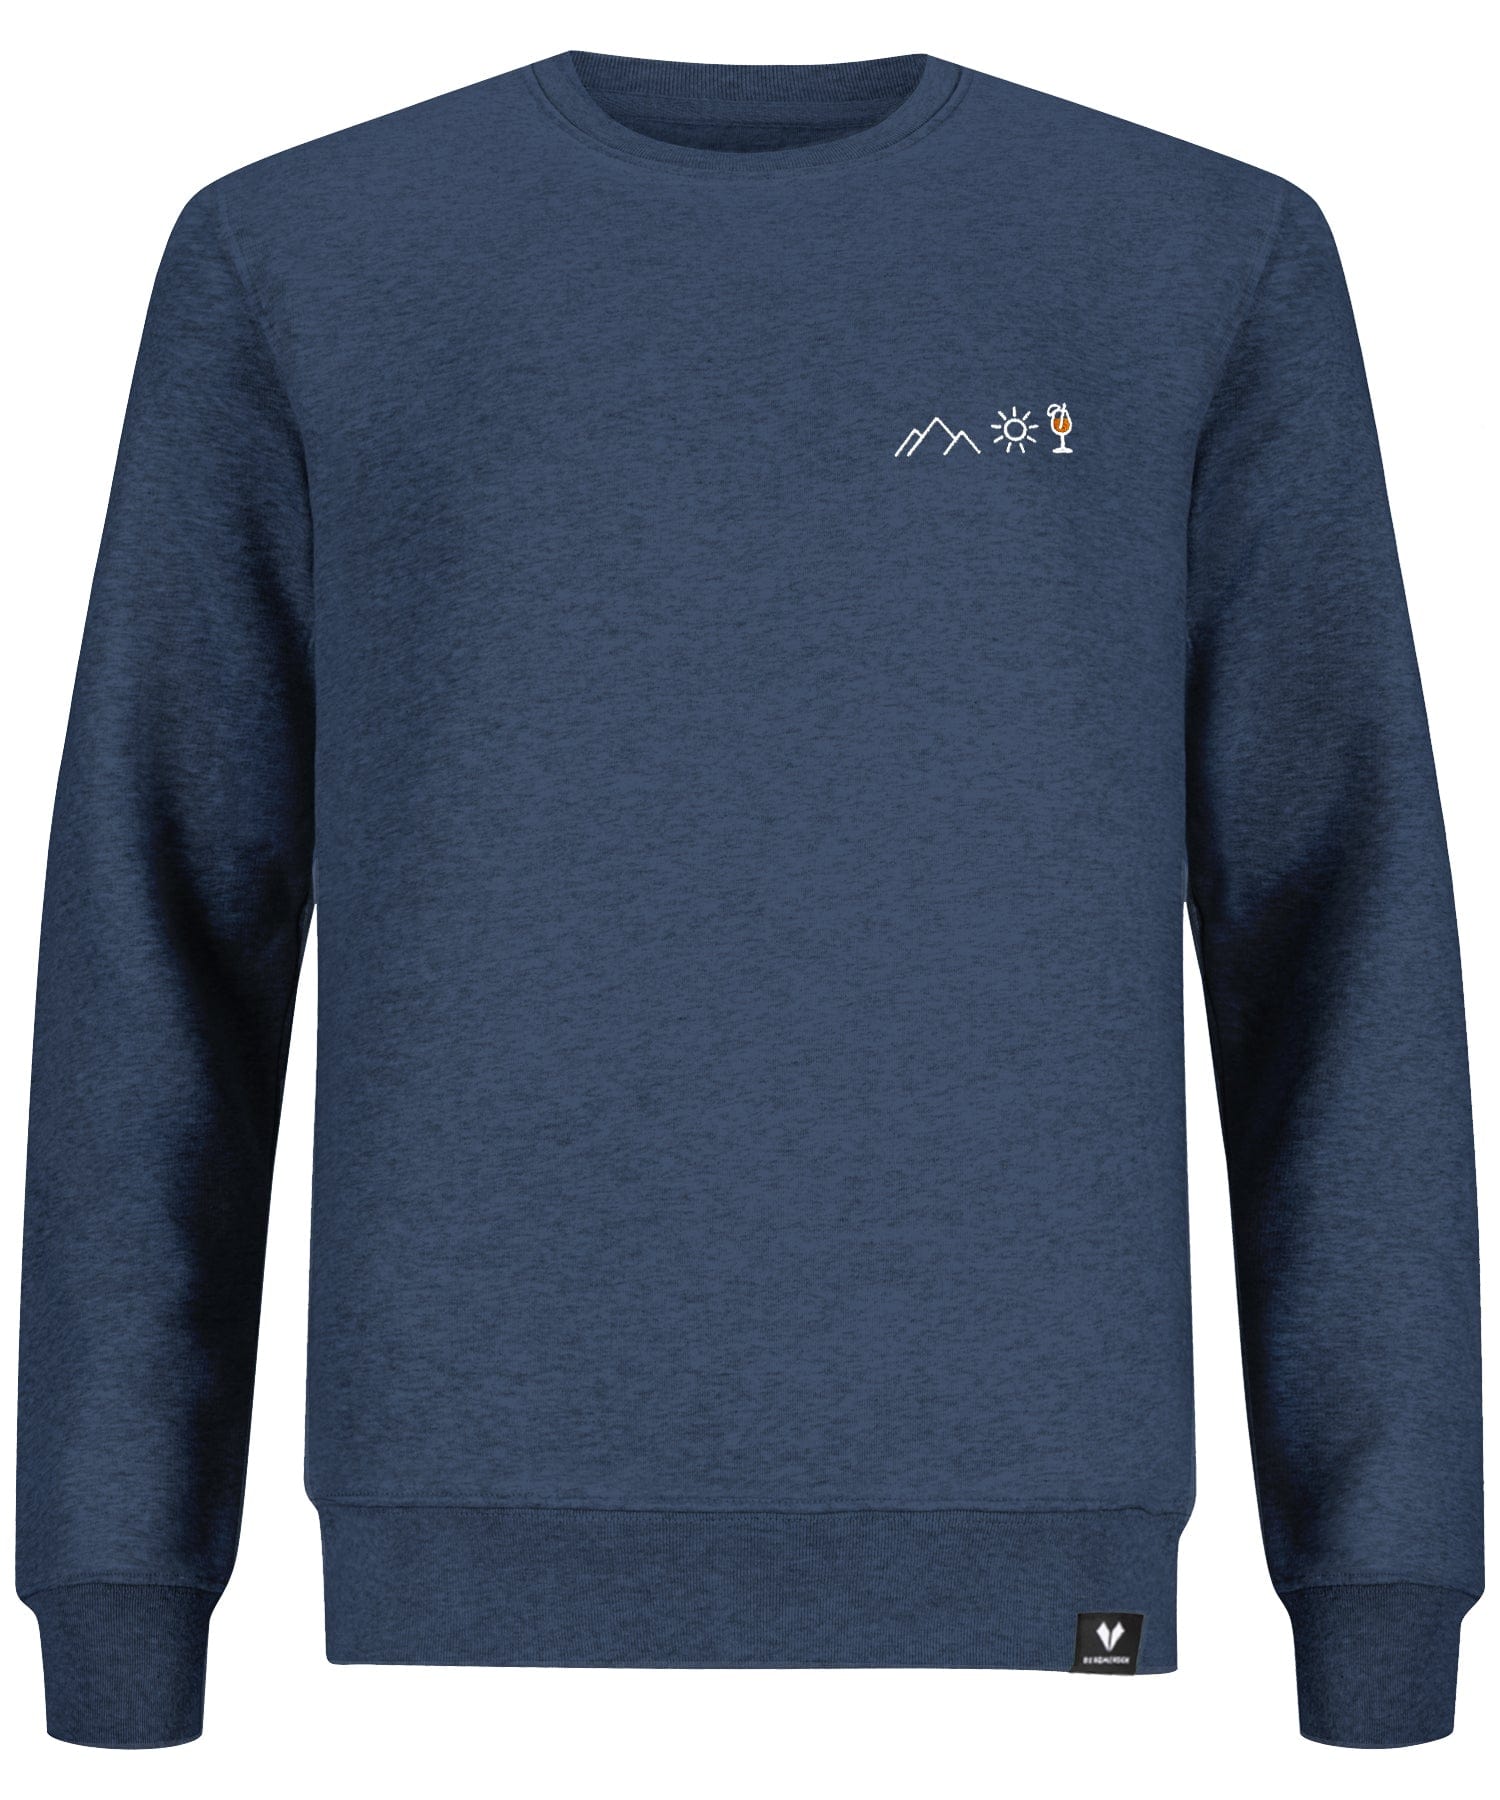 Berg Sonne Spritz - Unisex Premium Organic Sweatshirt